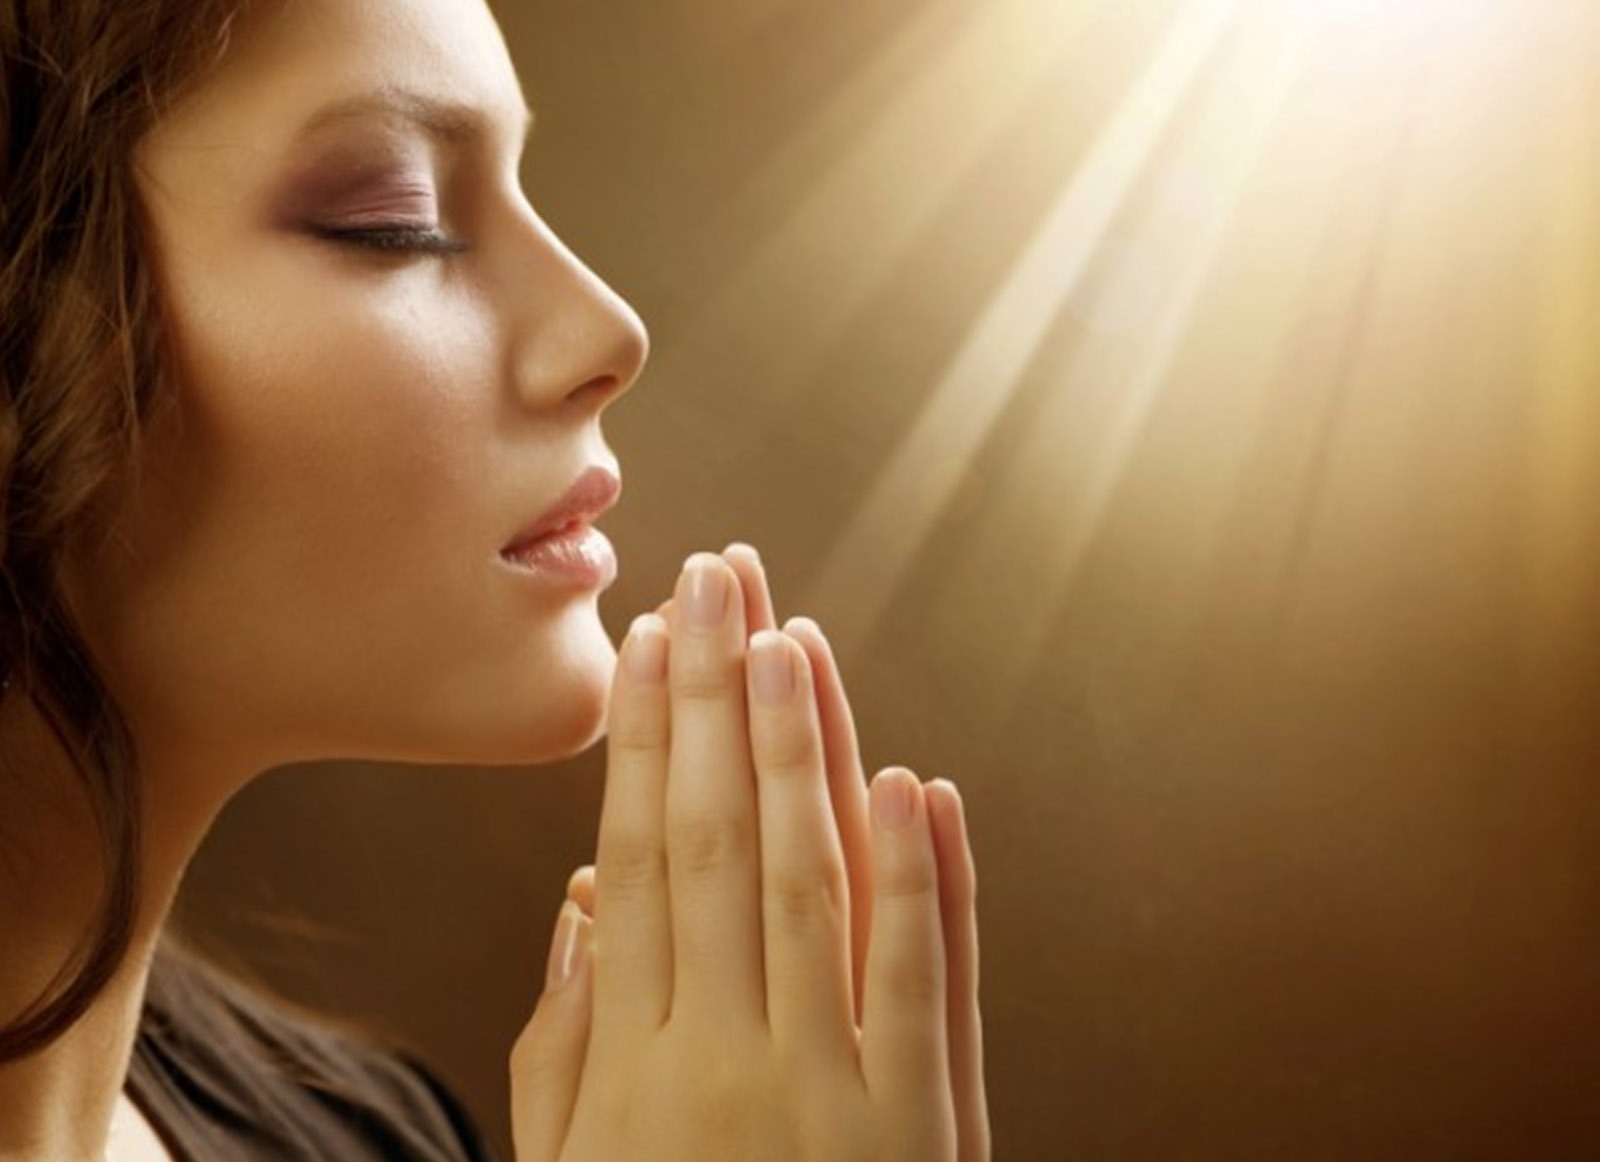 Hình ảnh cầu nguyện và ý nghĩa của cầu nguyện trong tôn giáo